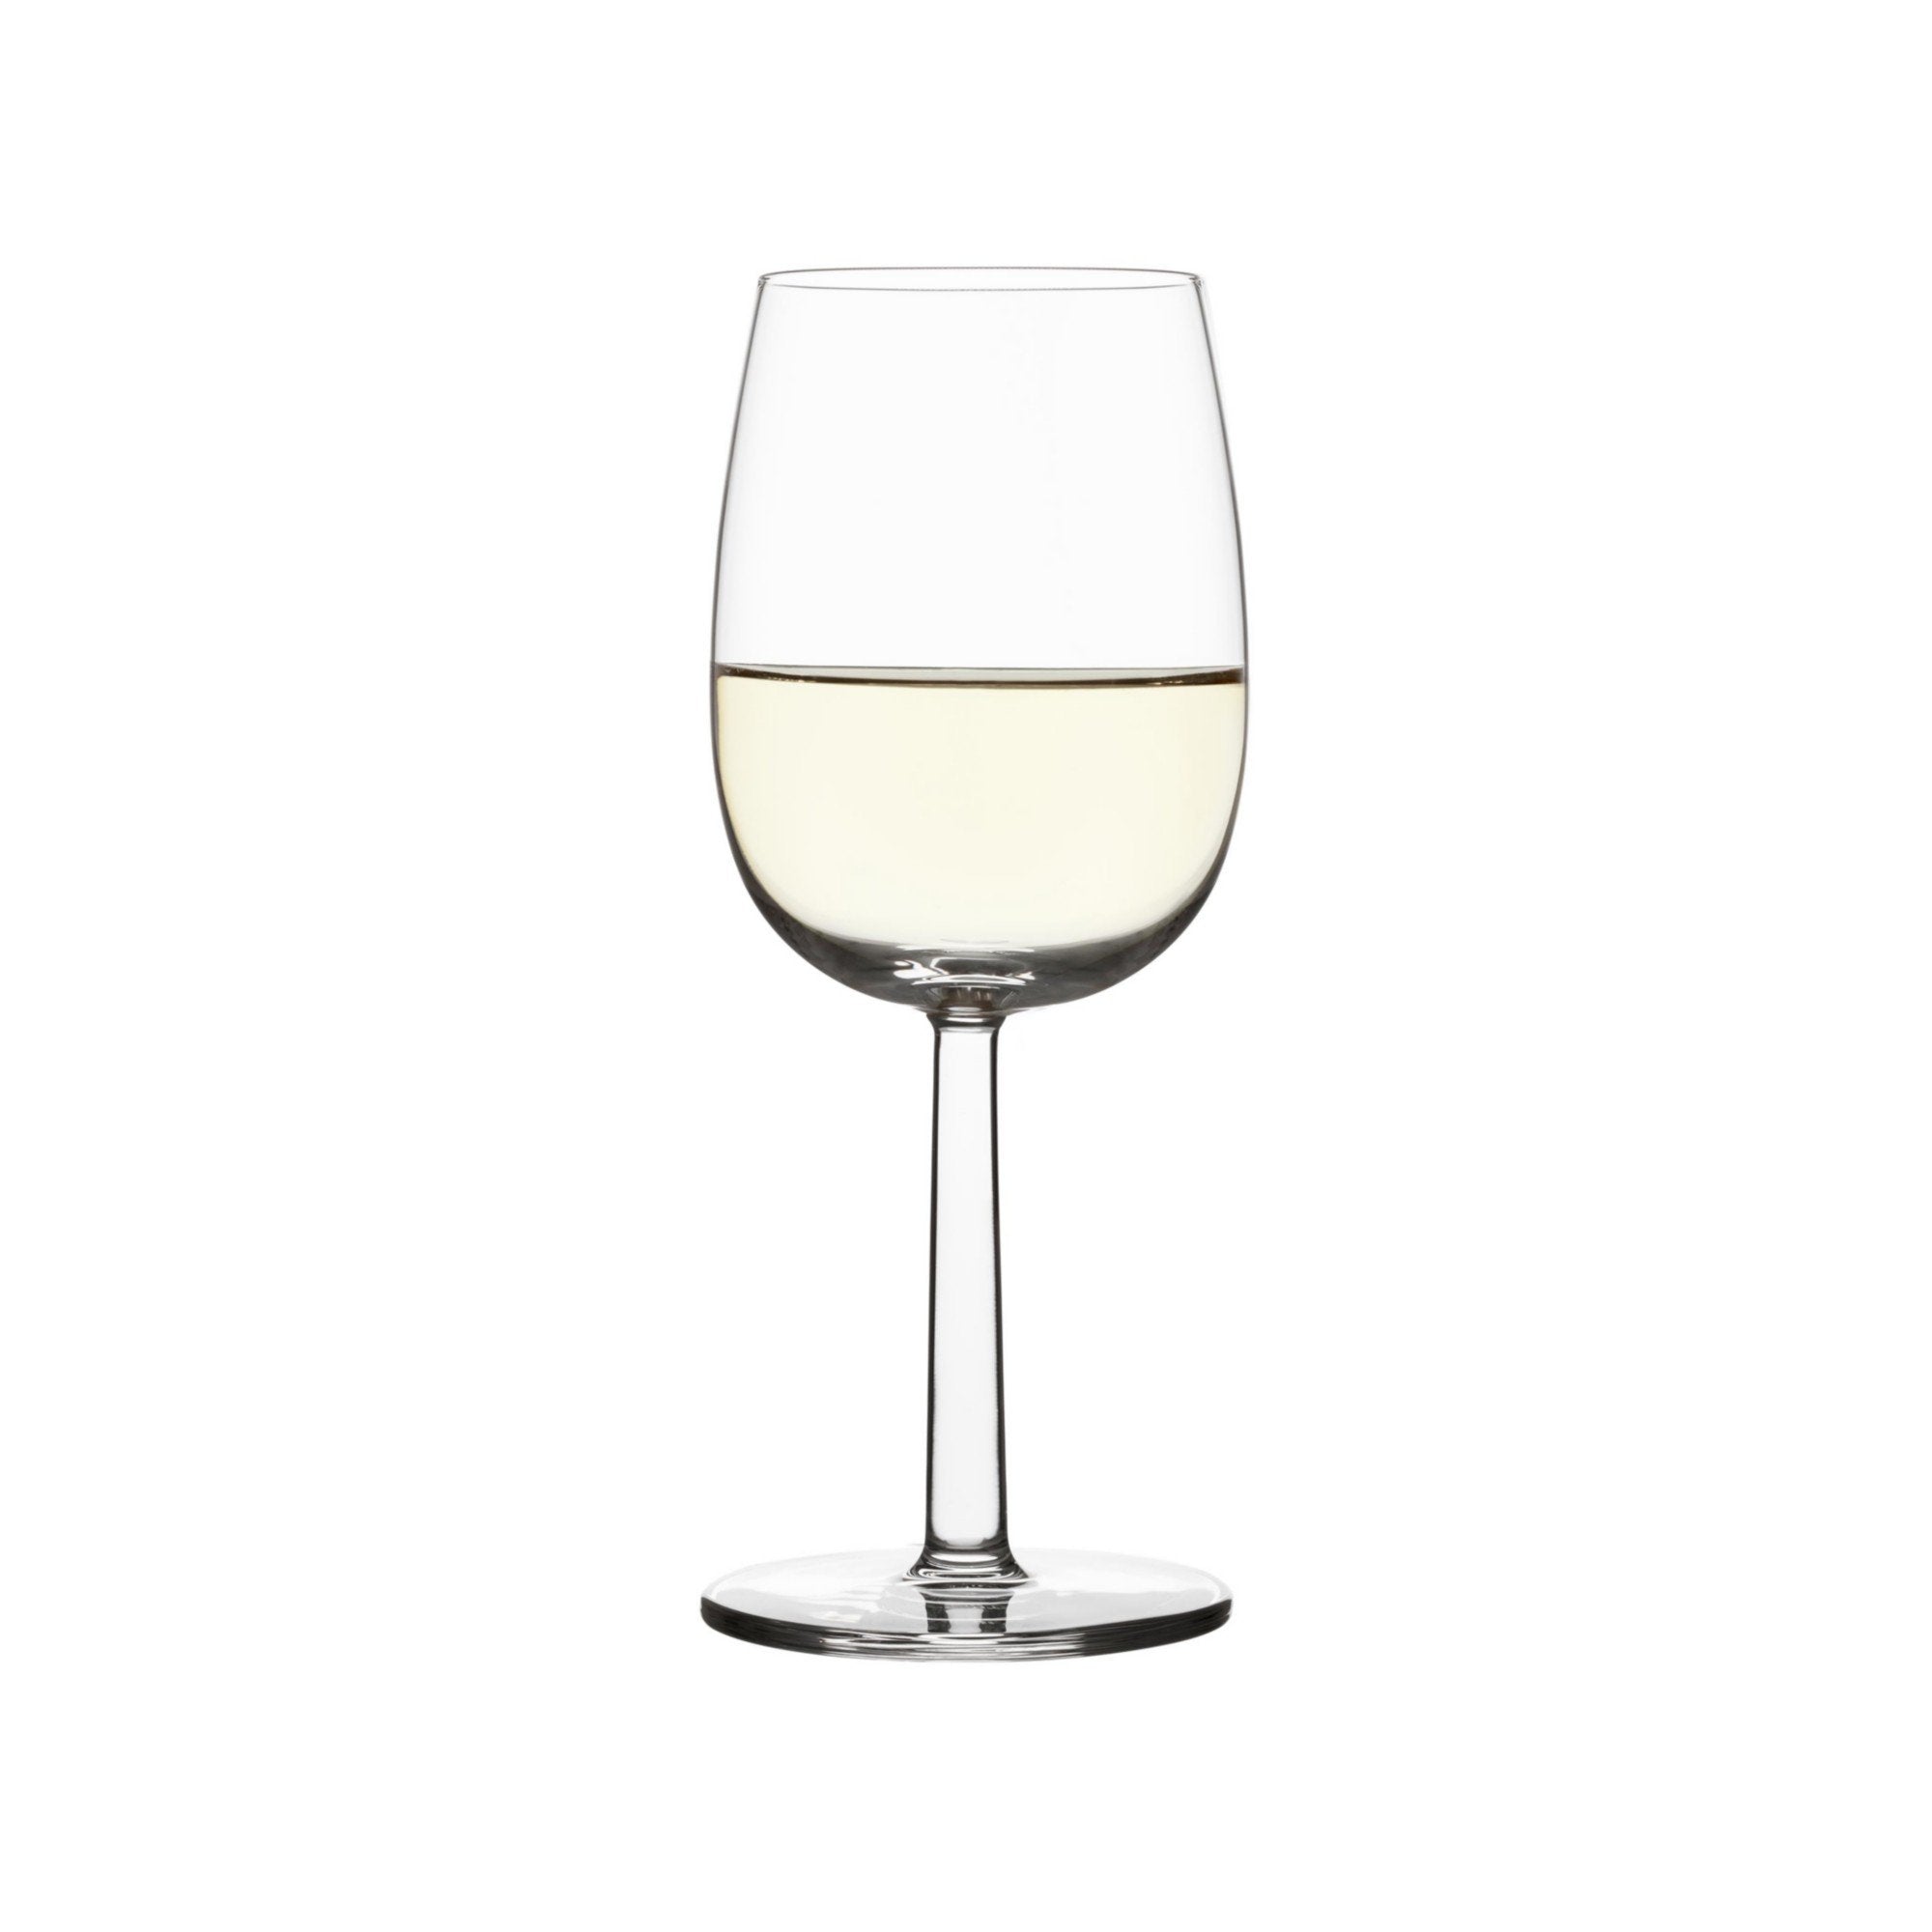 Iittala raami bicchieri di vino bianco sereno 2 pezzi, 28cl